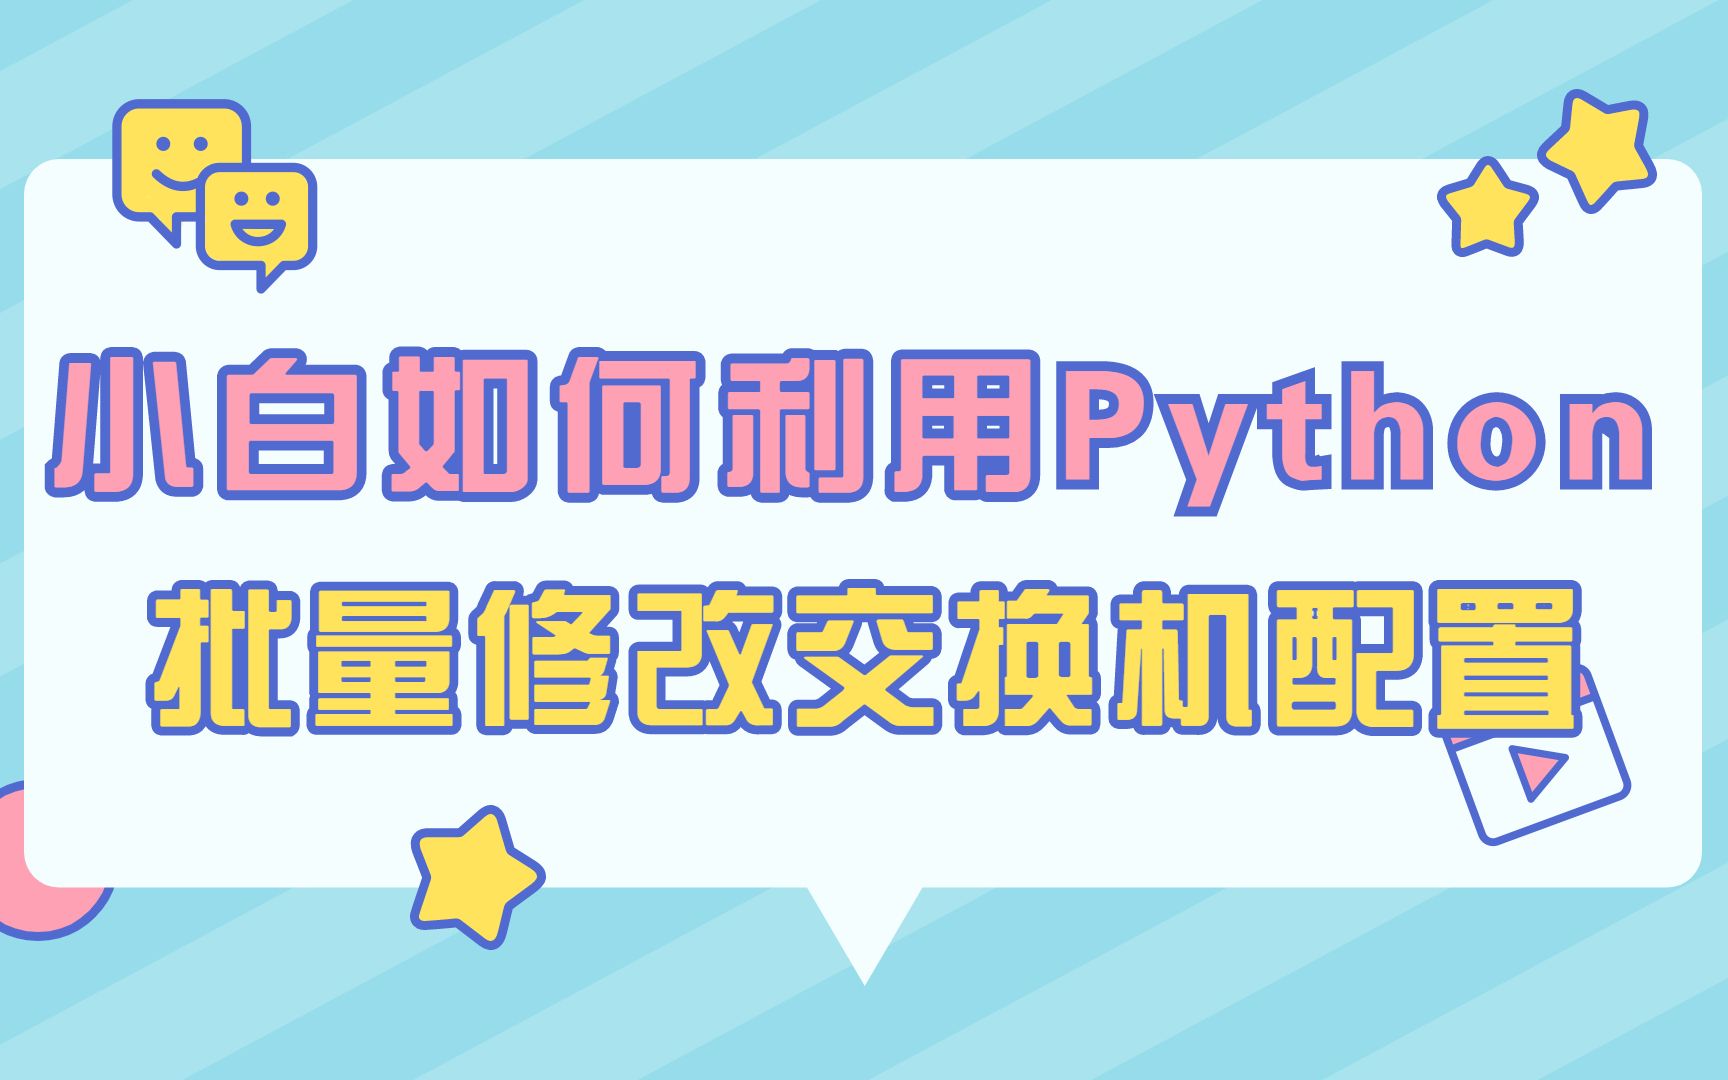 小白网络工程师如何利用python脚本实现批量登录路由器修改配置？